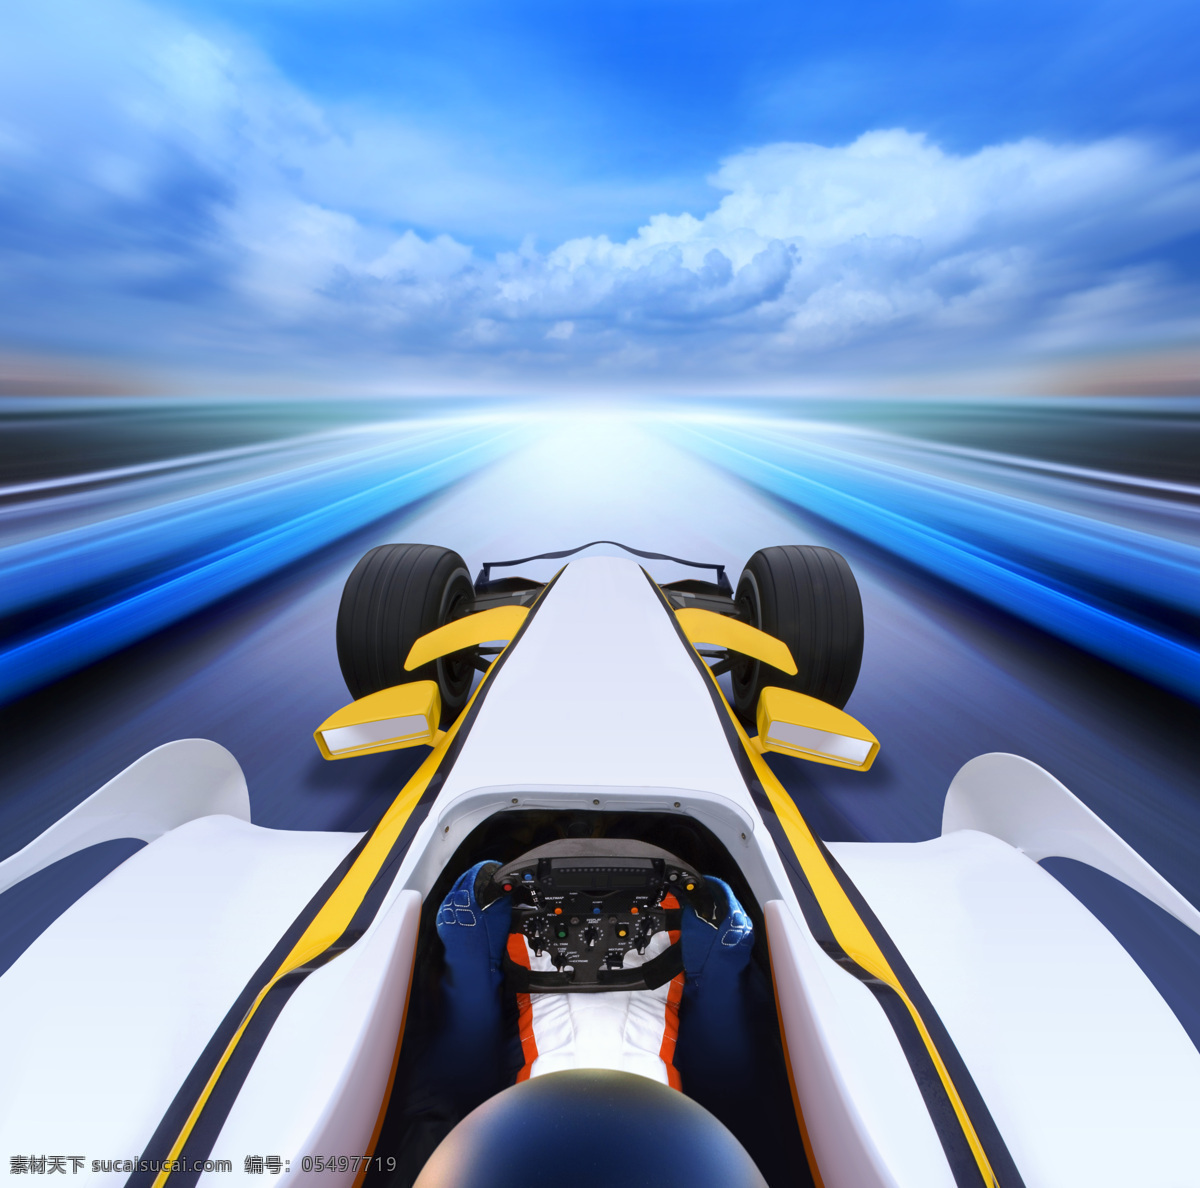 快速 行驶 f1 赛车 f1赛车 方程式赛车 快速主题 速度 交通工具 现代科技 汽车图片